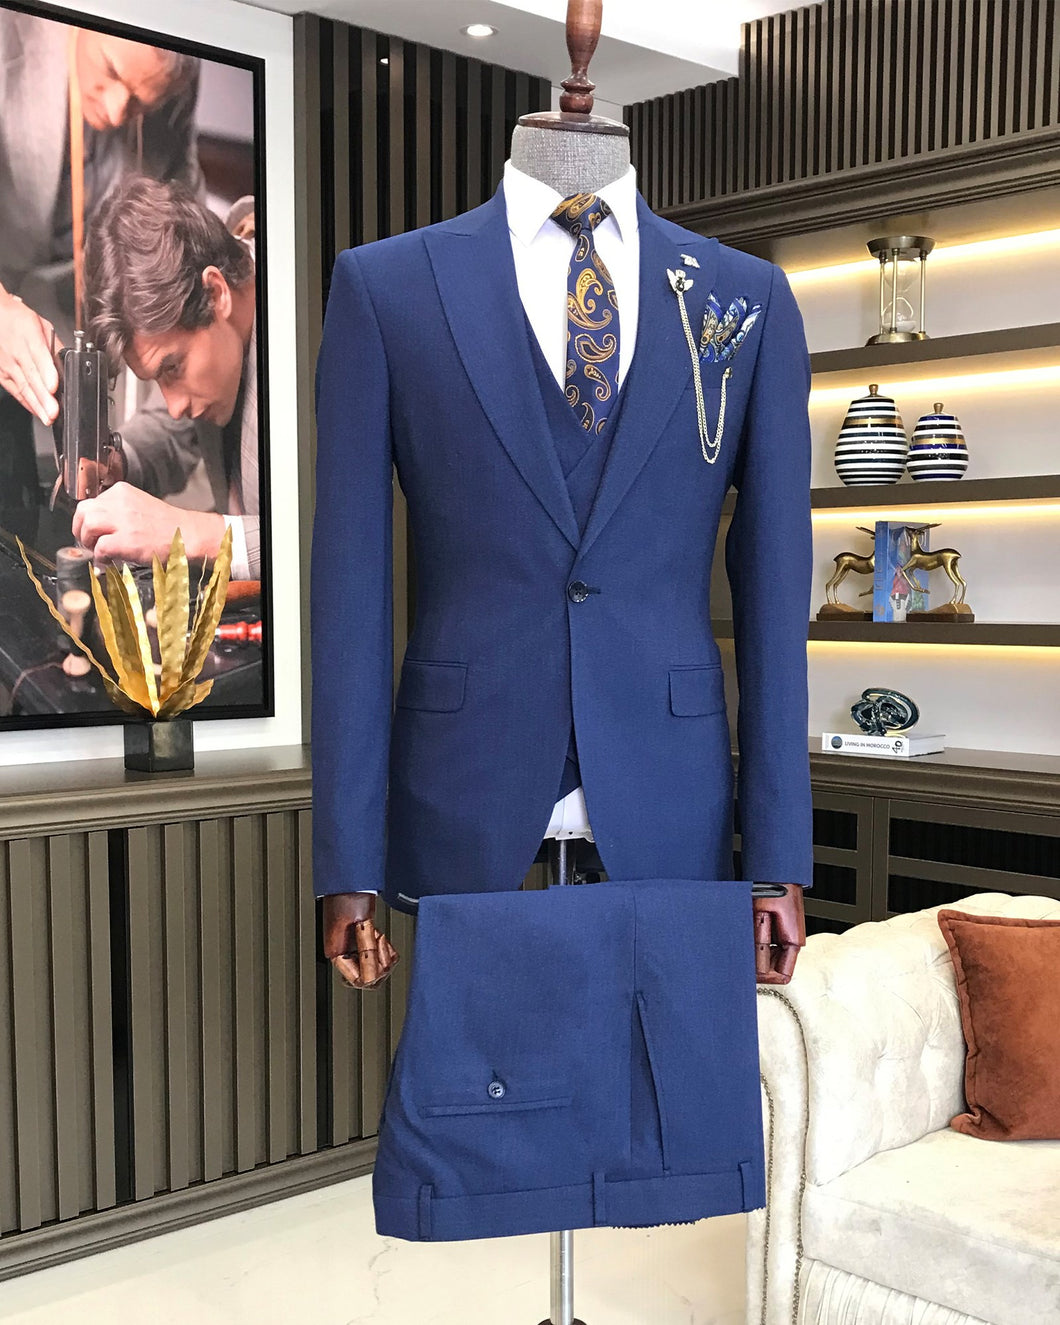 Bram Castle Blue Solid Slim Fit Suit